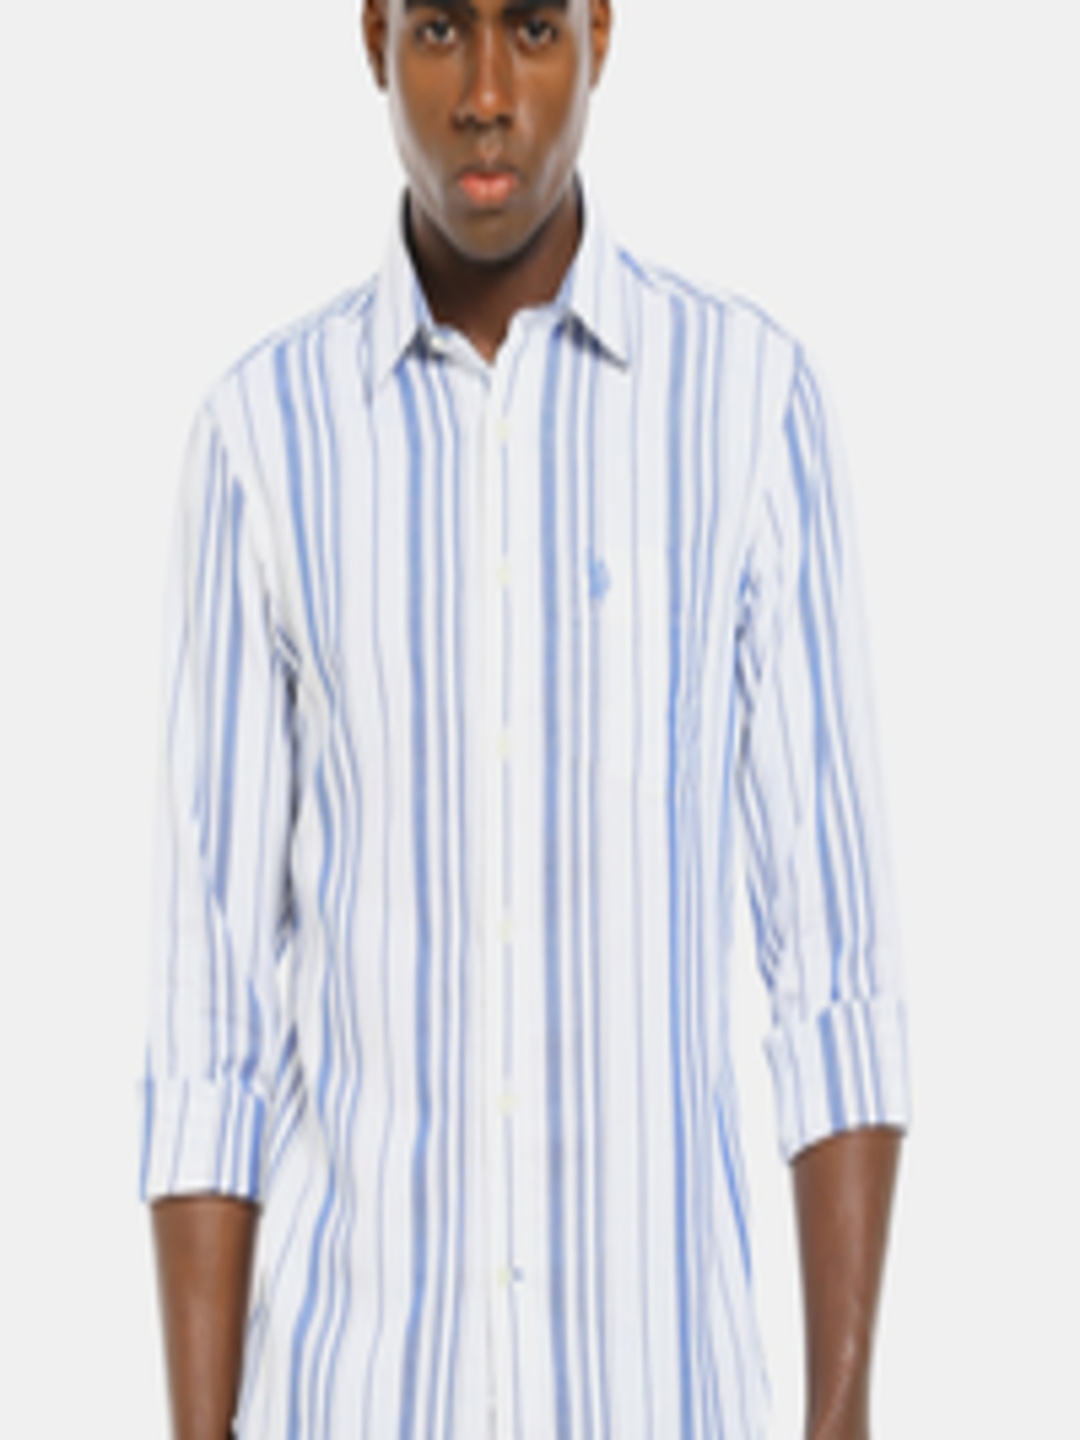 Buy U S Polo Assn Men Blue & White Striped Cotton Casual Shirt - Shirts ...